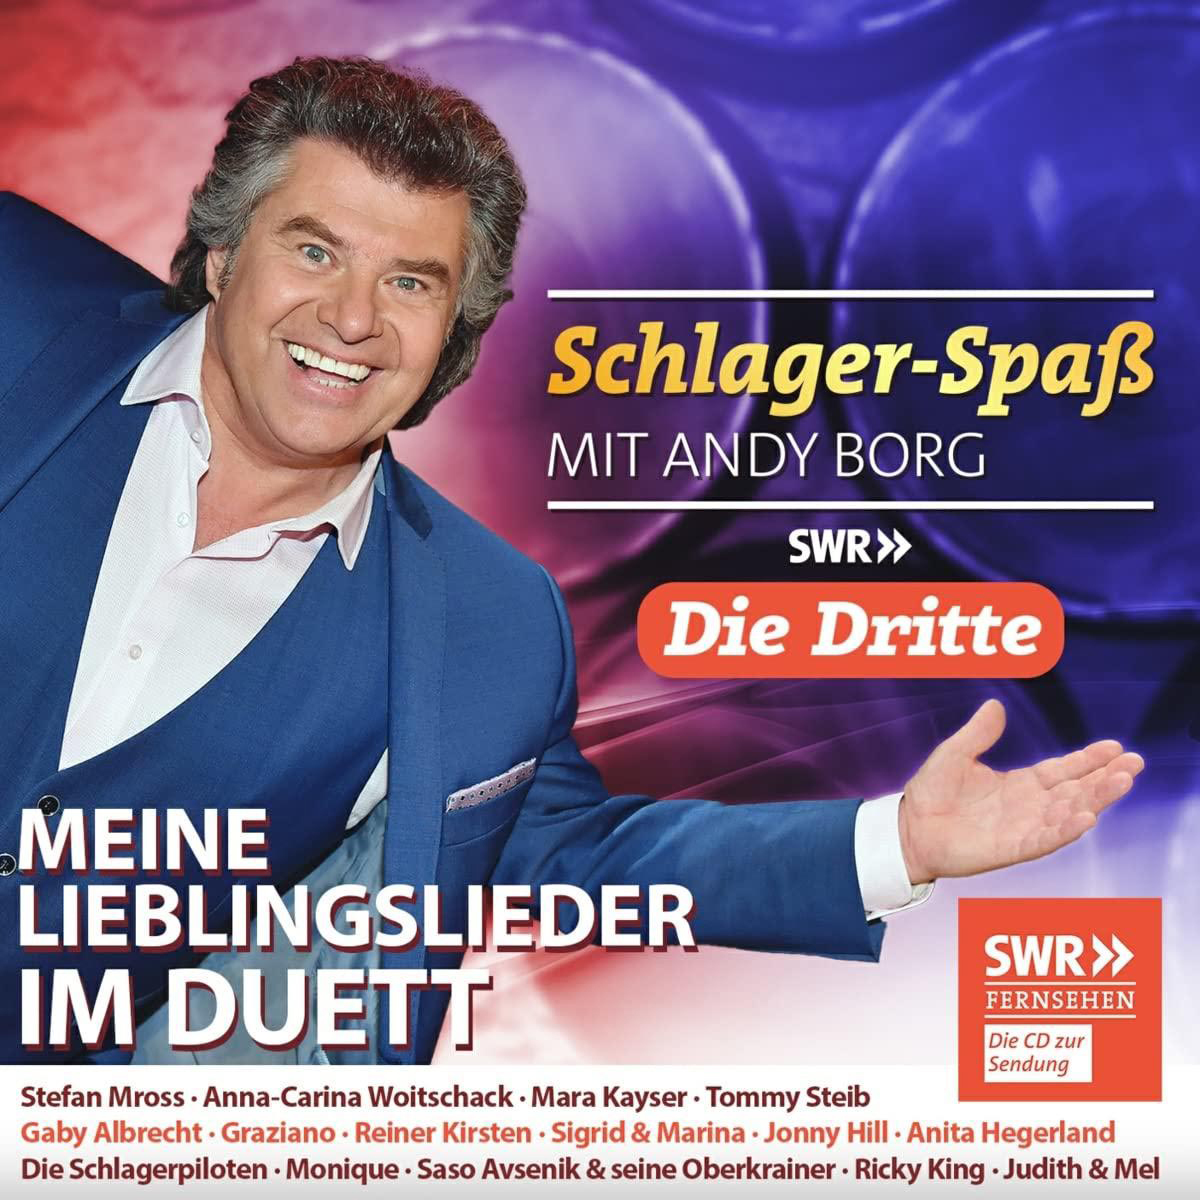 VARIOUS - Schlager-Spaß mit Andy im Lieblingslieder Dritte Meine Borg: - - Duett Die (CD)